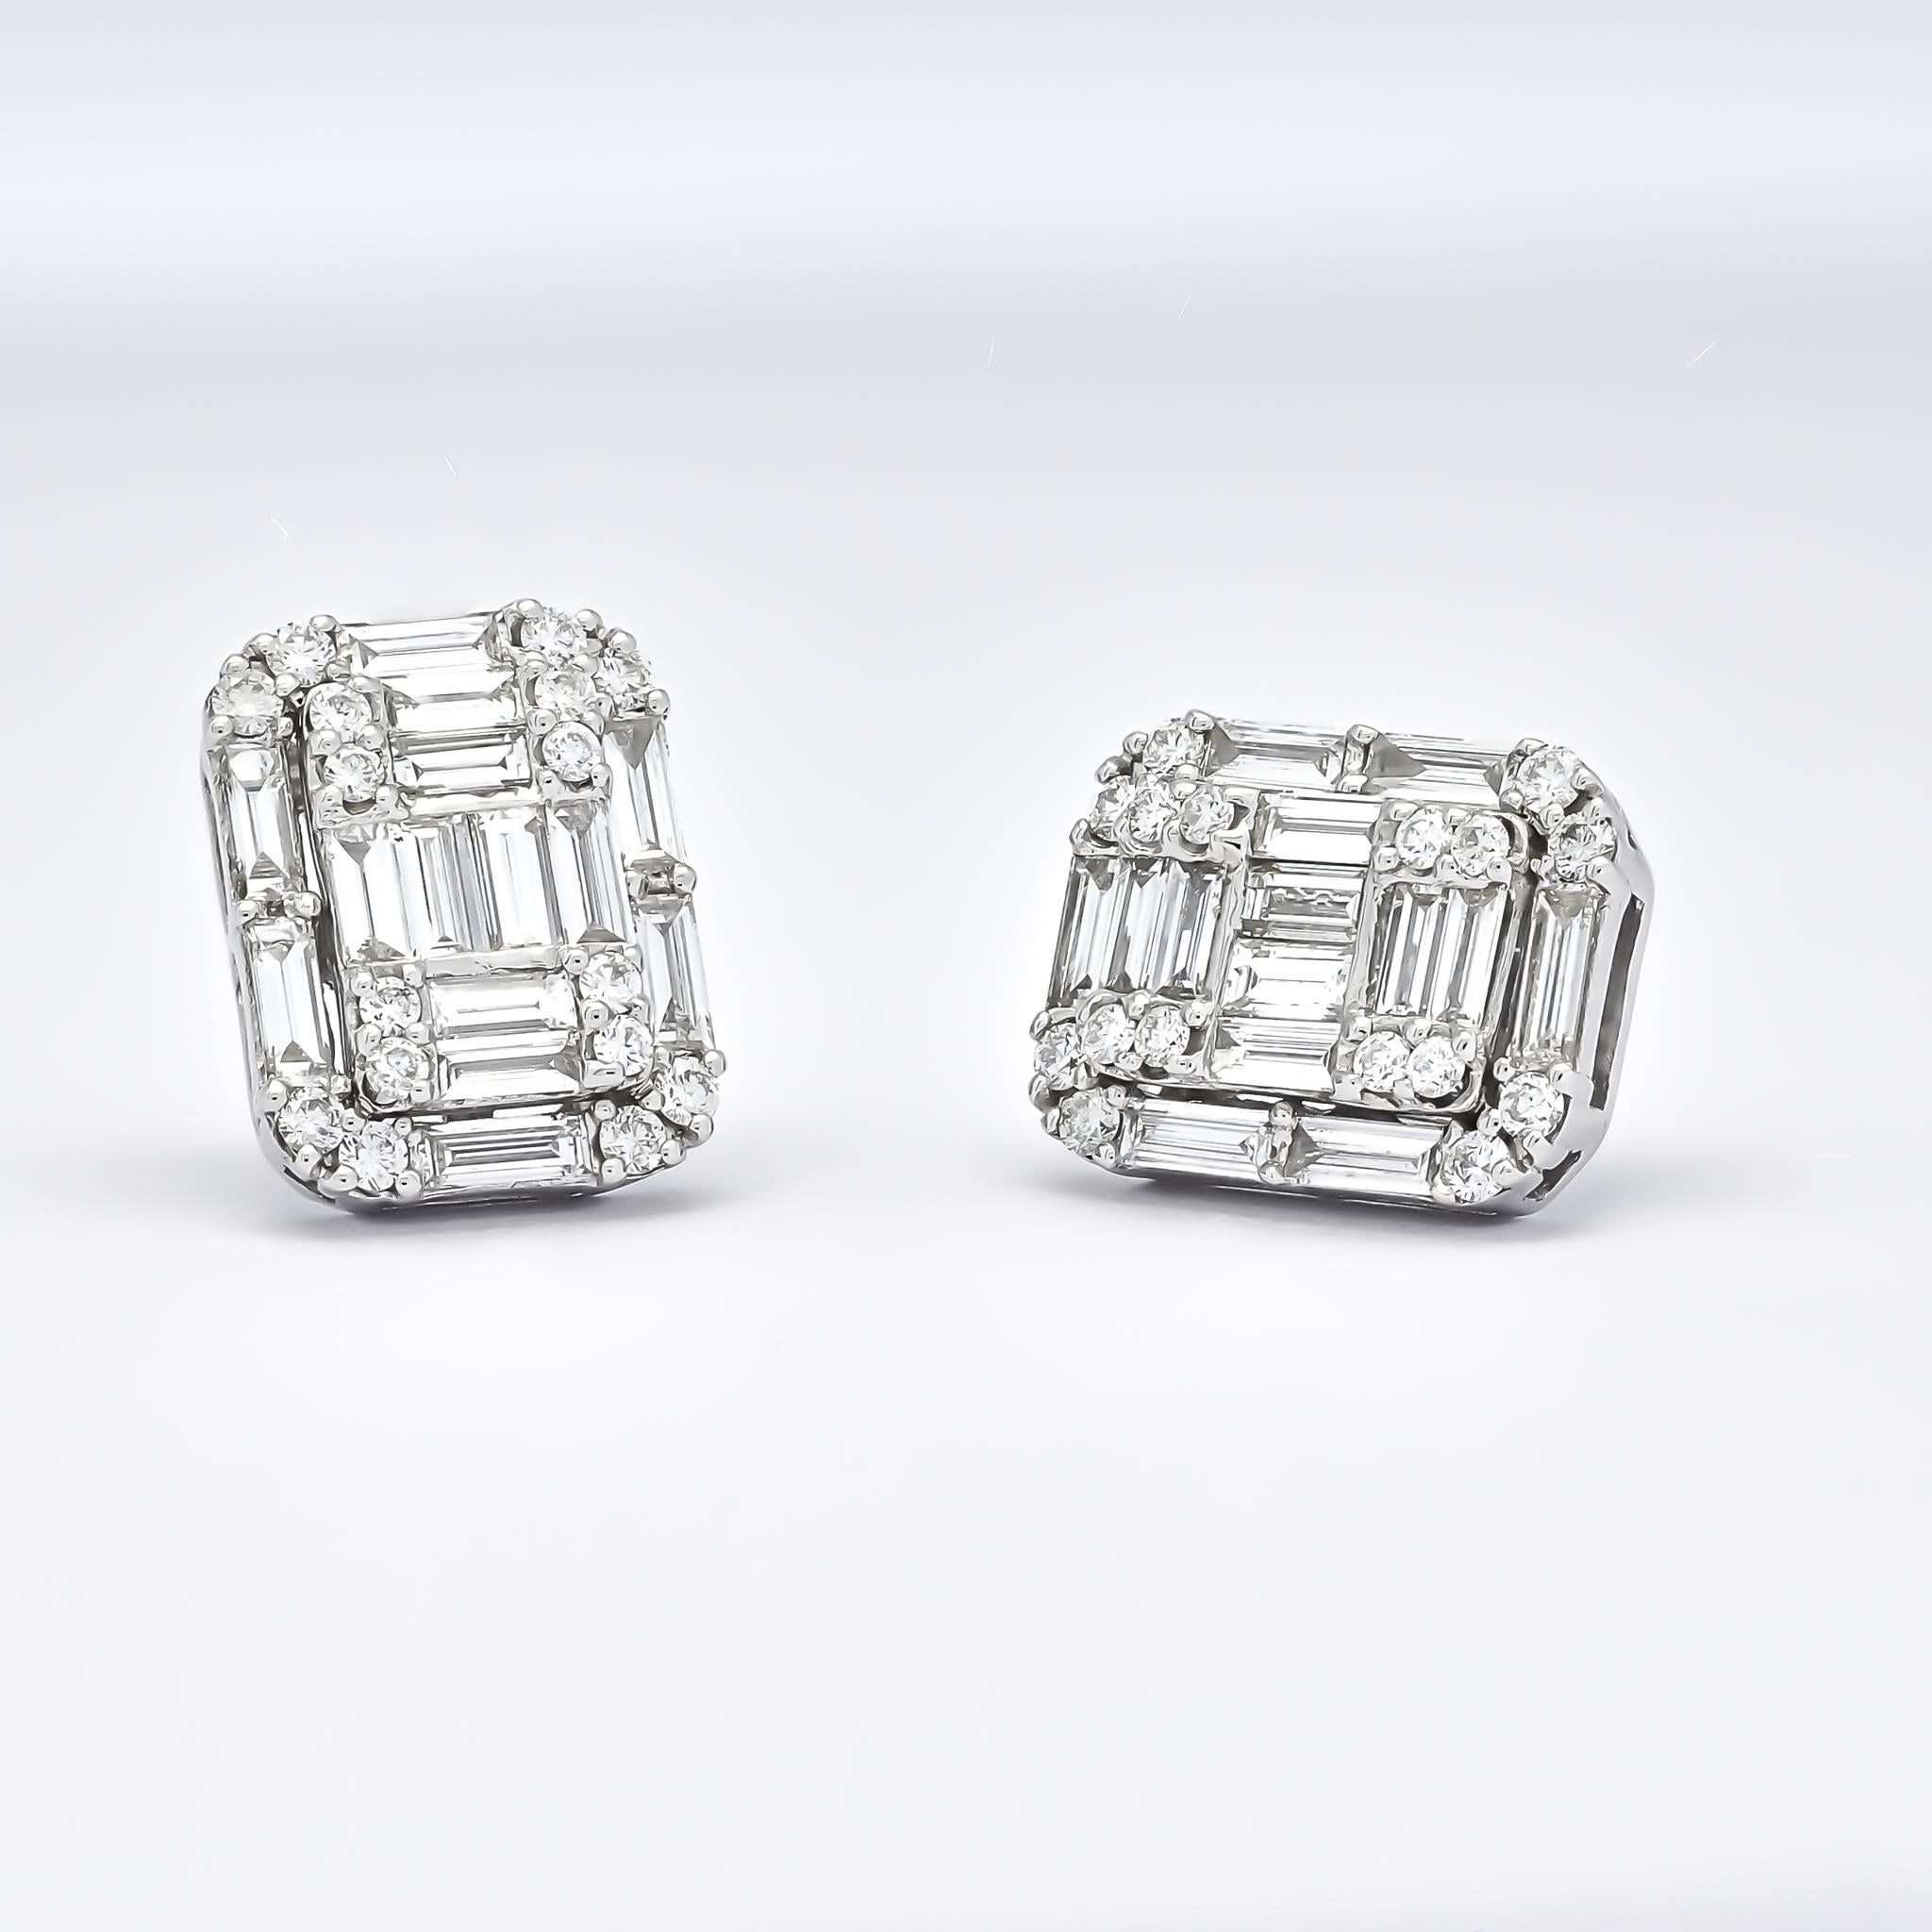 Der zarte Cluster aus runden und Baguette-Diamanten zieht die Blicke auf sich, während der Halo aus Baguette-Diamanten einen strahlenden Rahmen bildet und die Brillanz der Ohrringe insgesamt noch verstärkt.

Mit diesen atemberaubenden